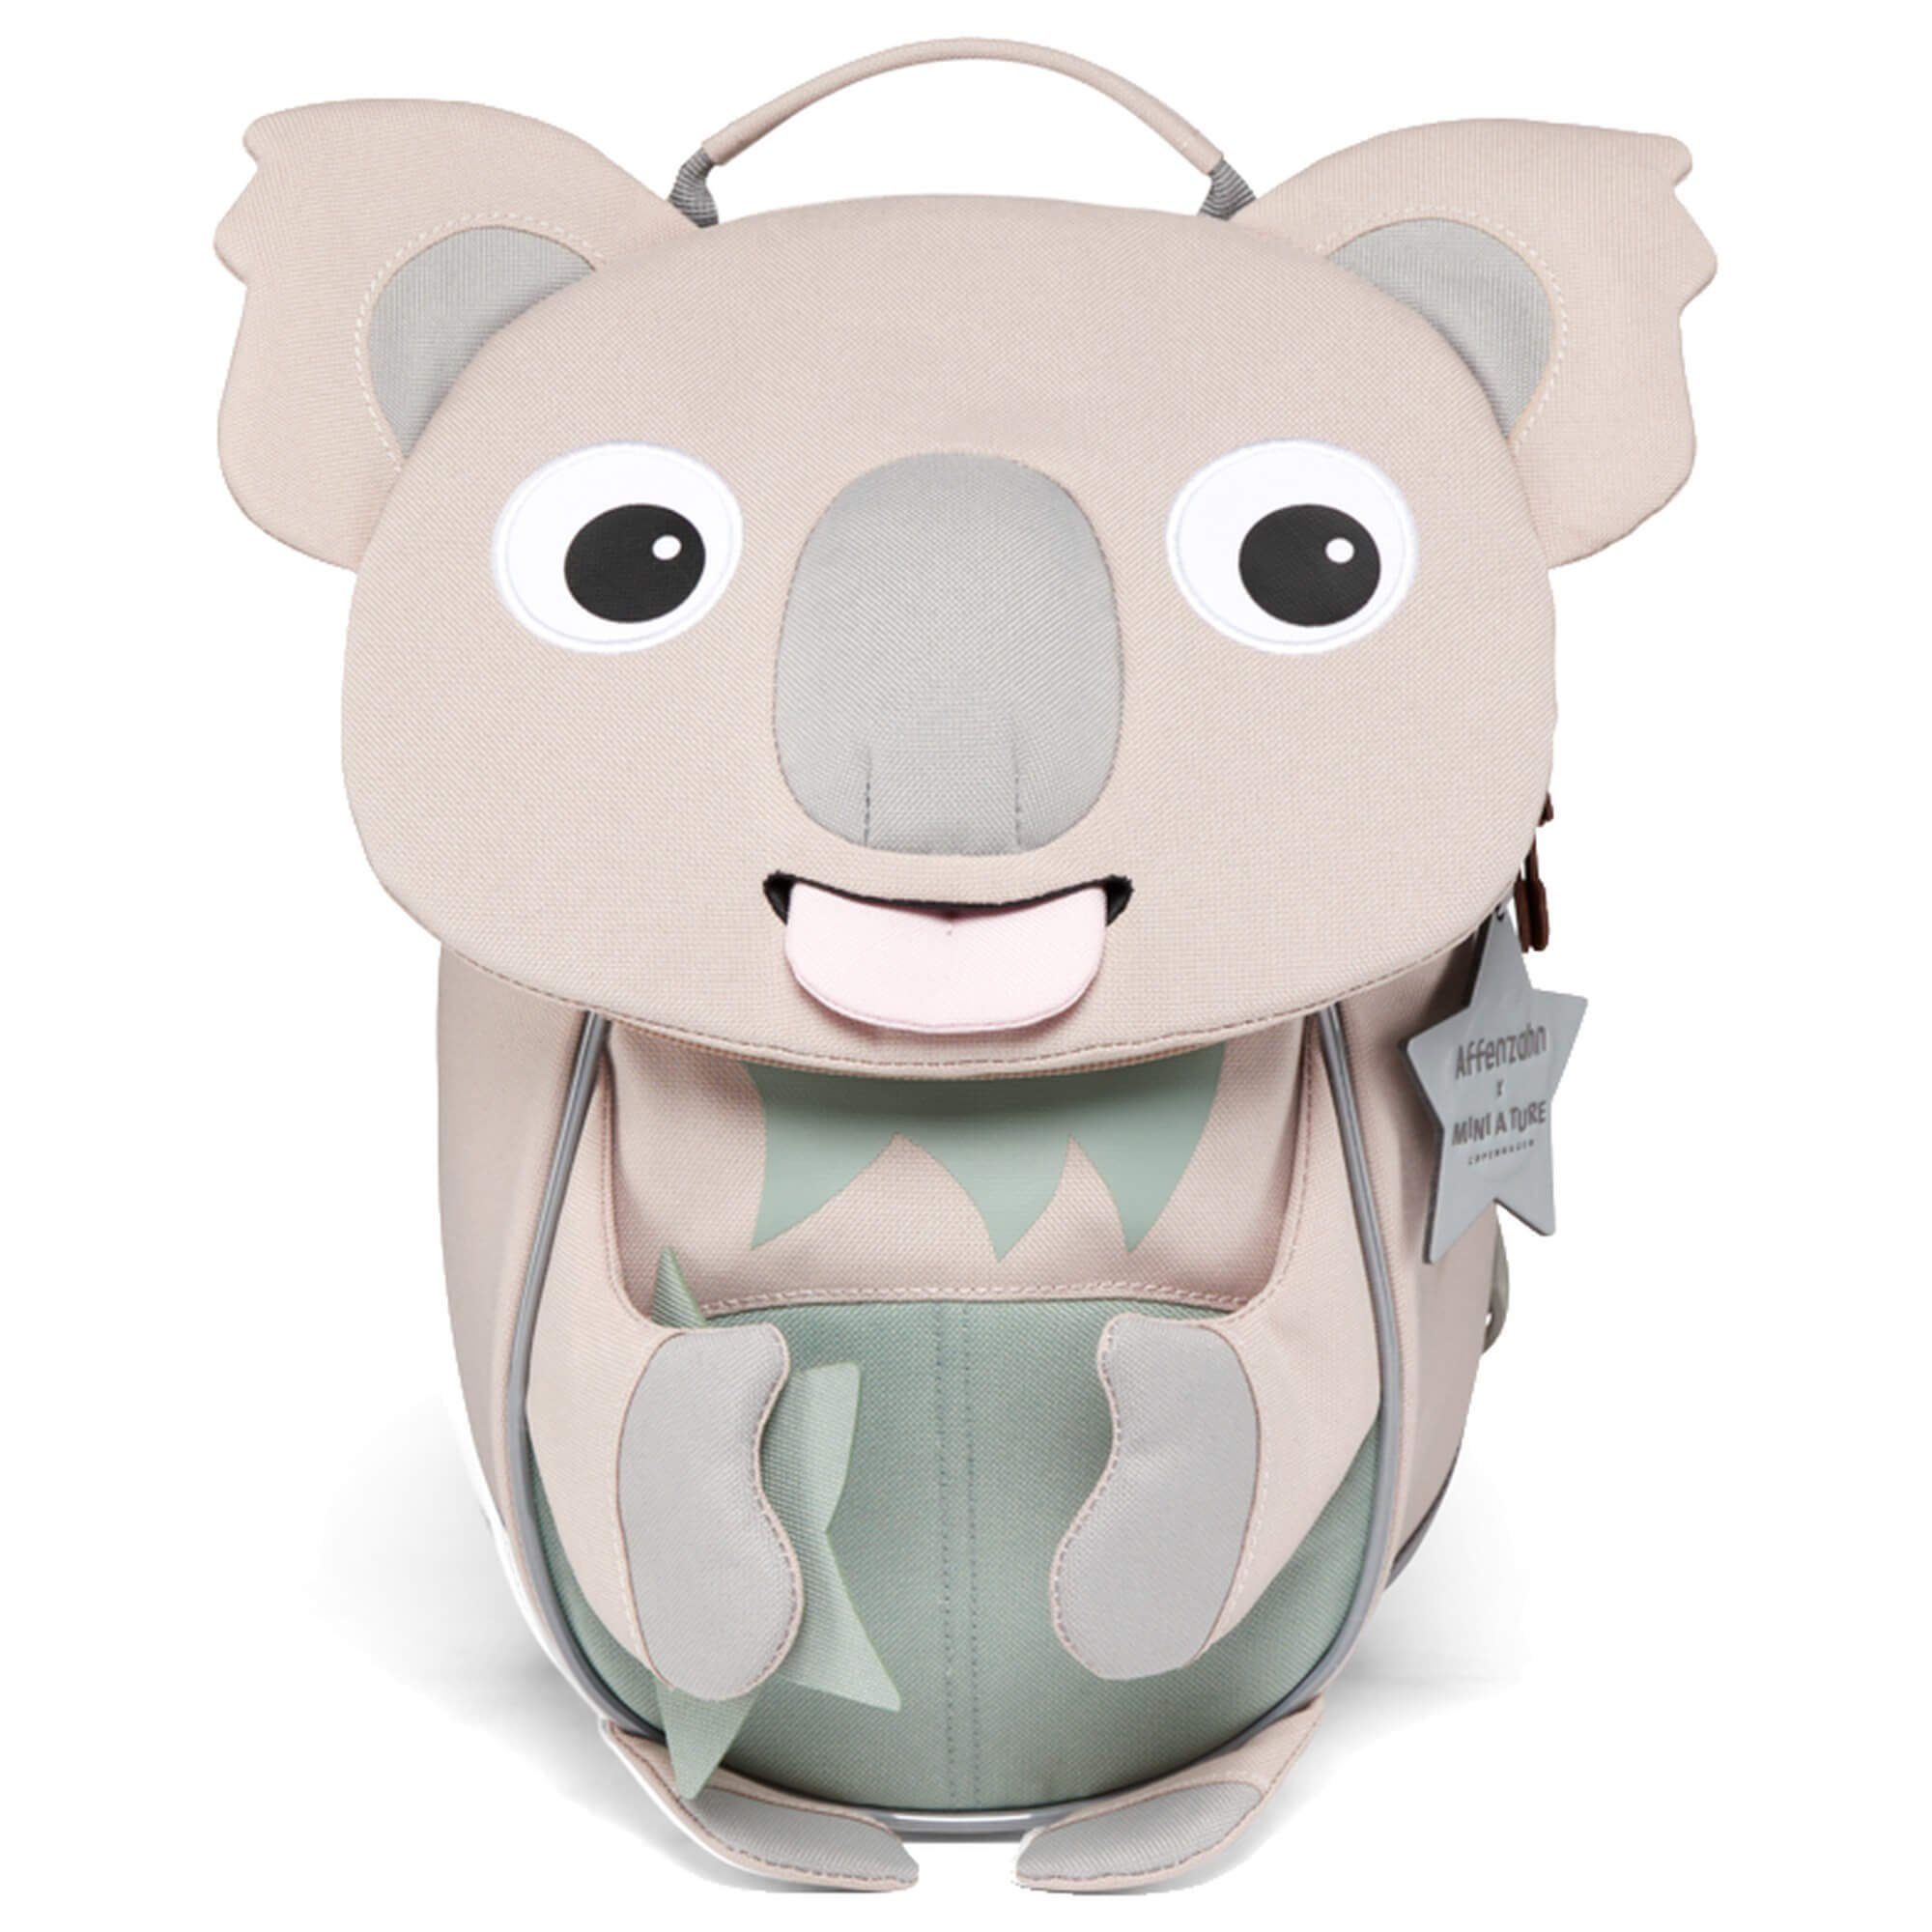 Affenzahn Kinderrucksack Kleine Freunde - Miniature J. 1-3 Rucksack für Koala